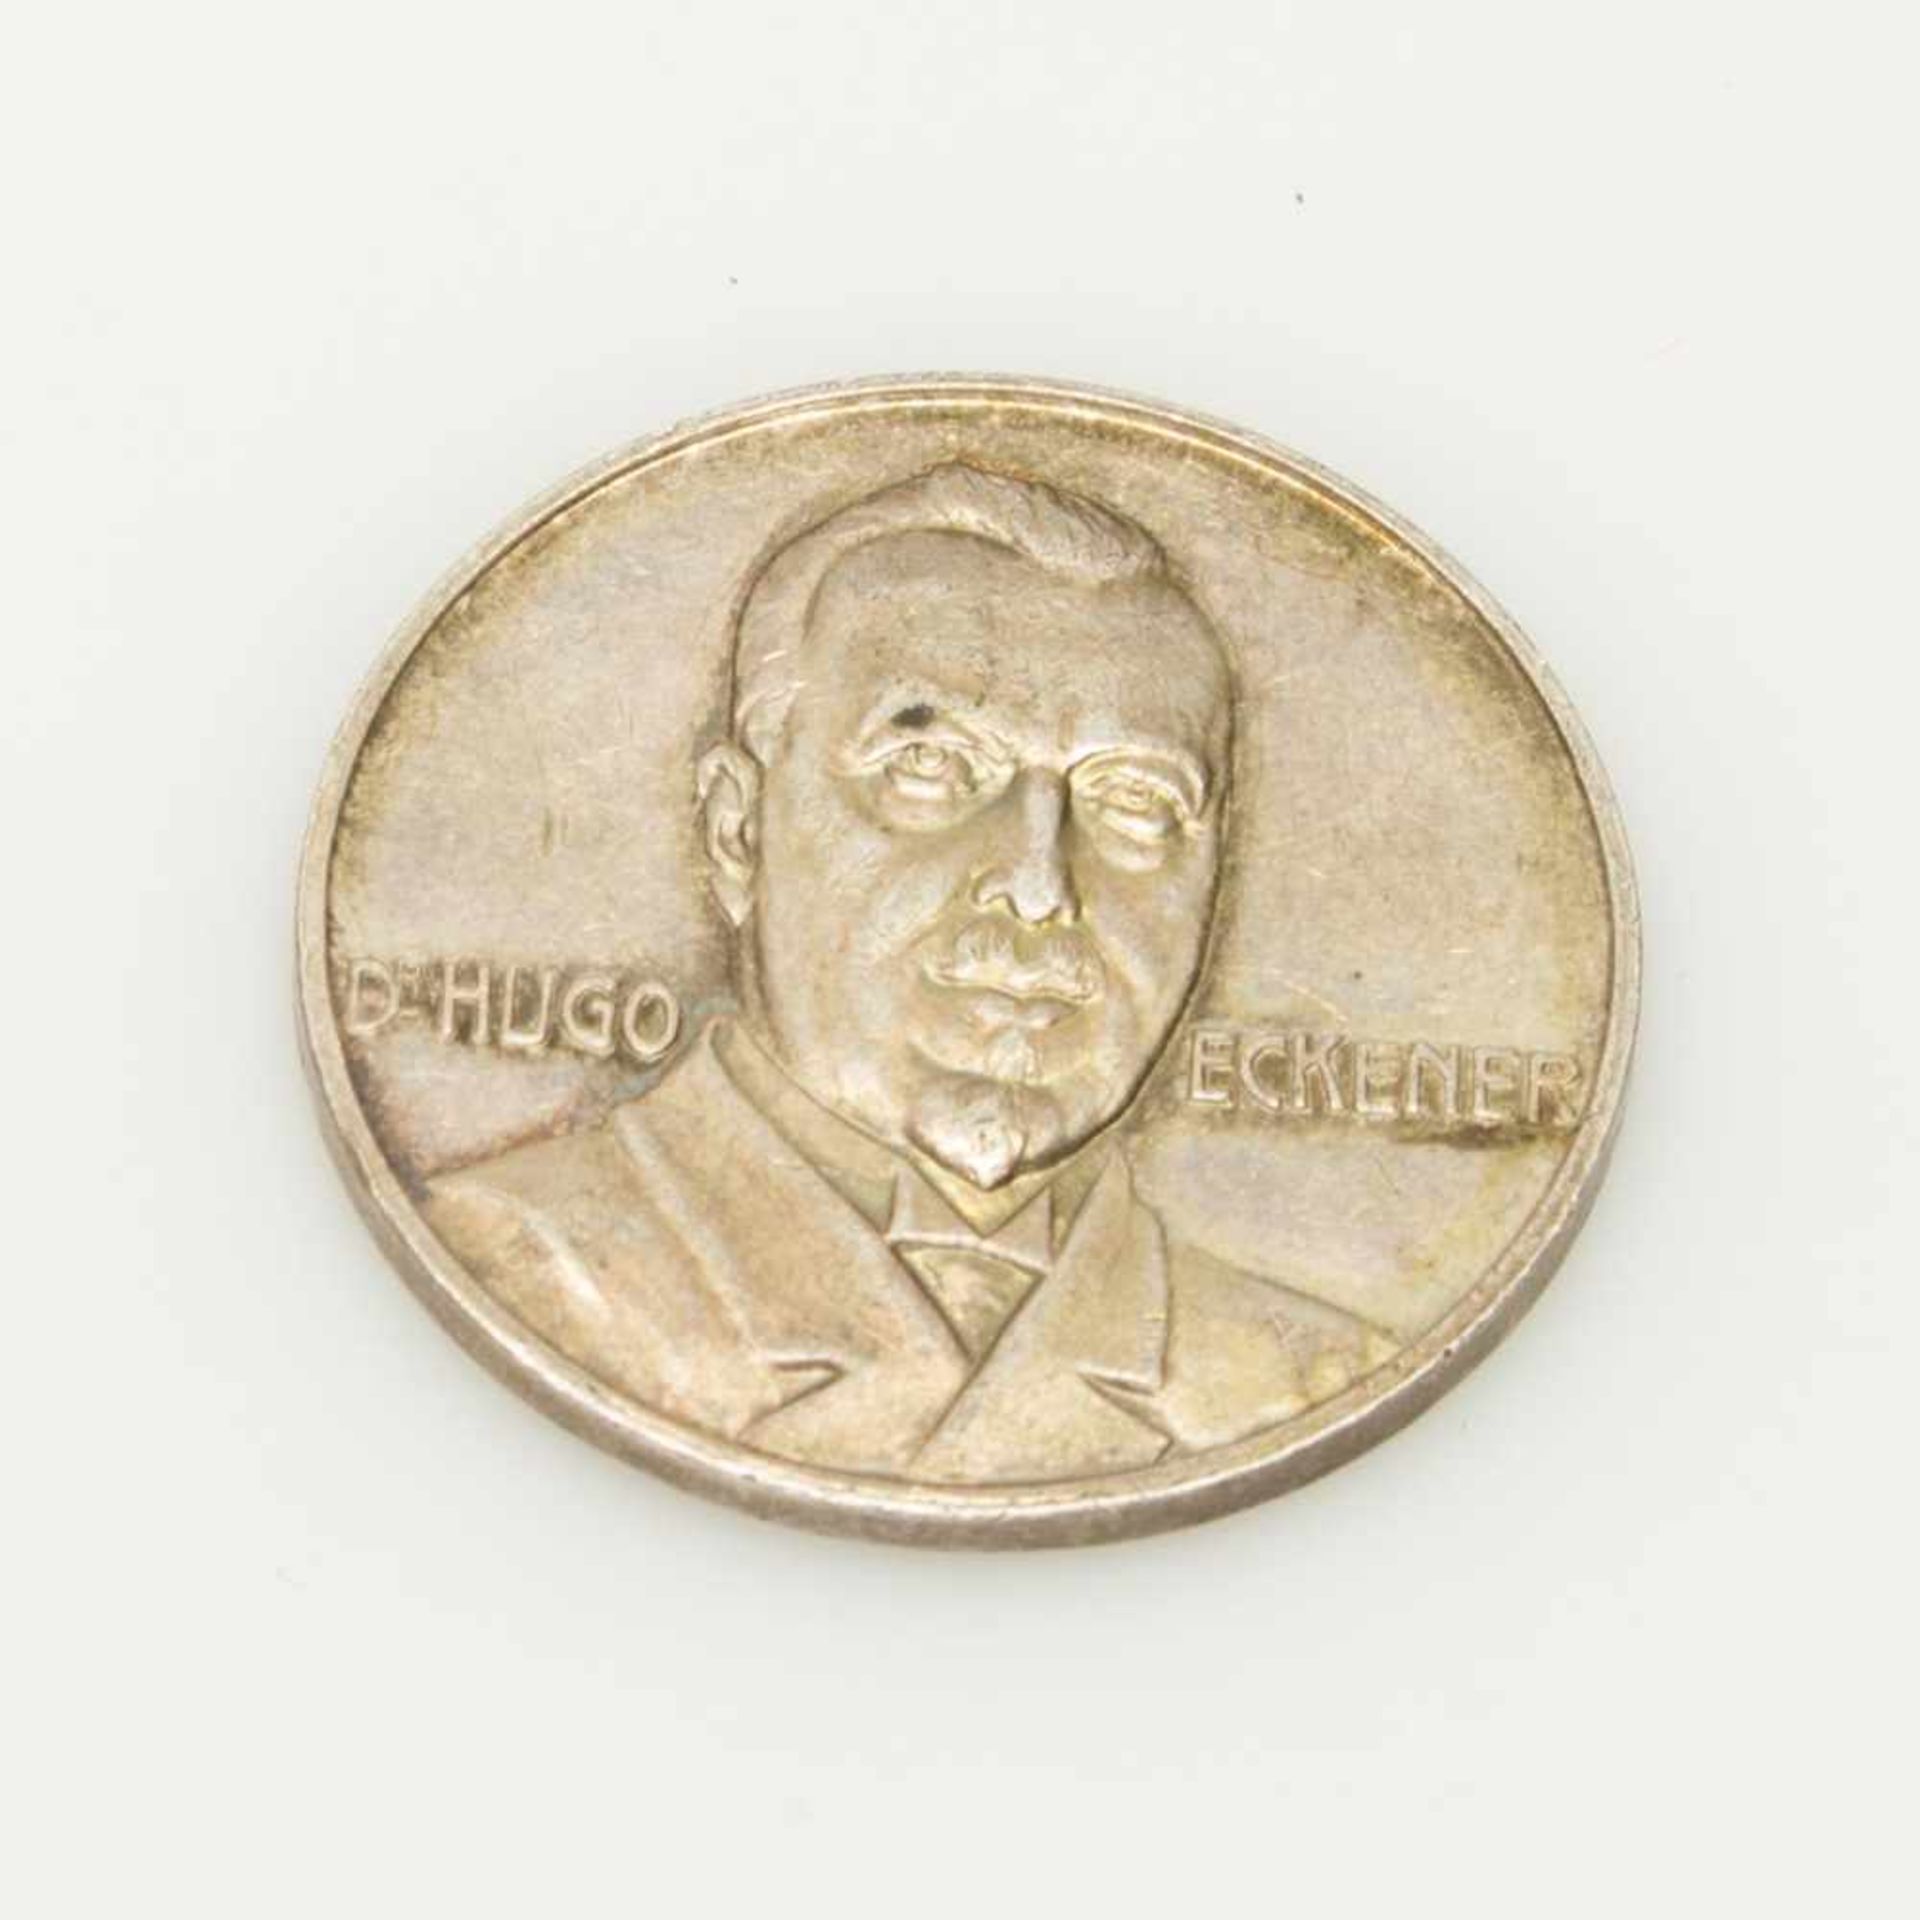 Dr. Hugo Eckener Medaillezur Erinnerung der Amerikafahrt des LZ 126 (ZR III) 1924, Silber